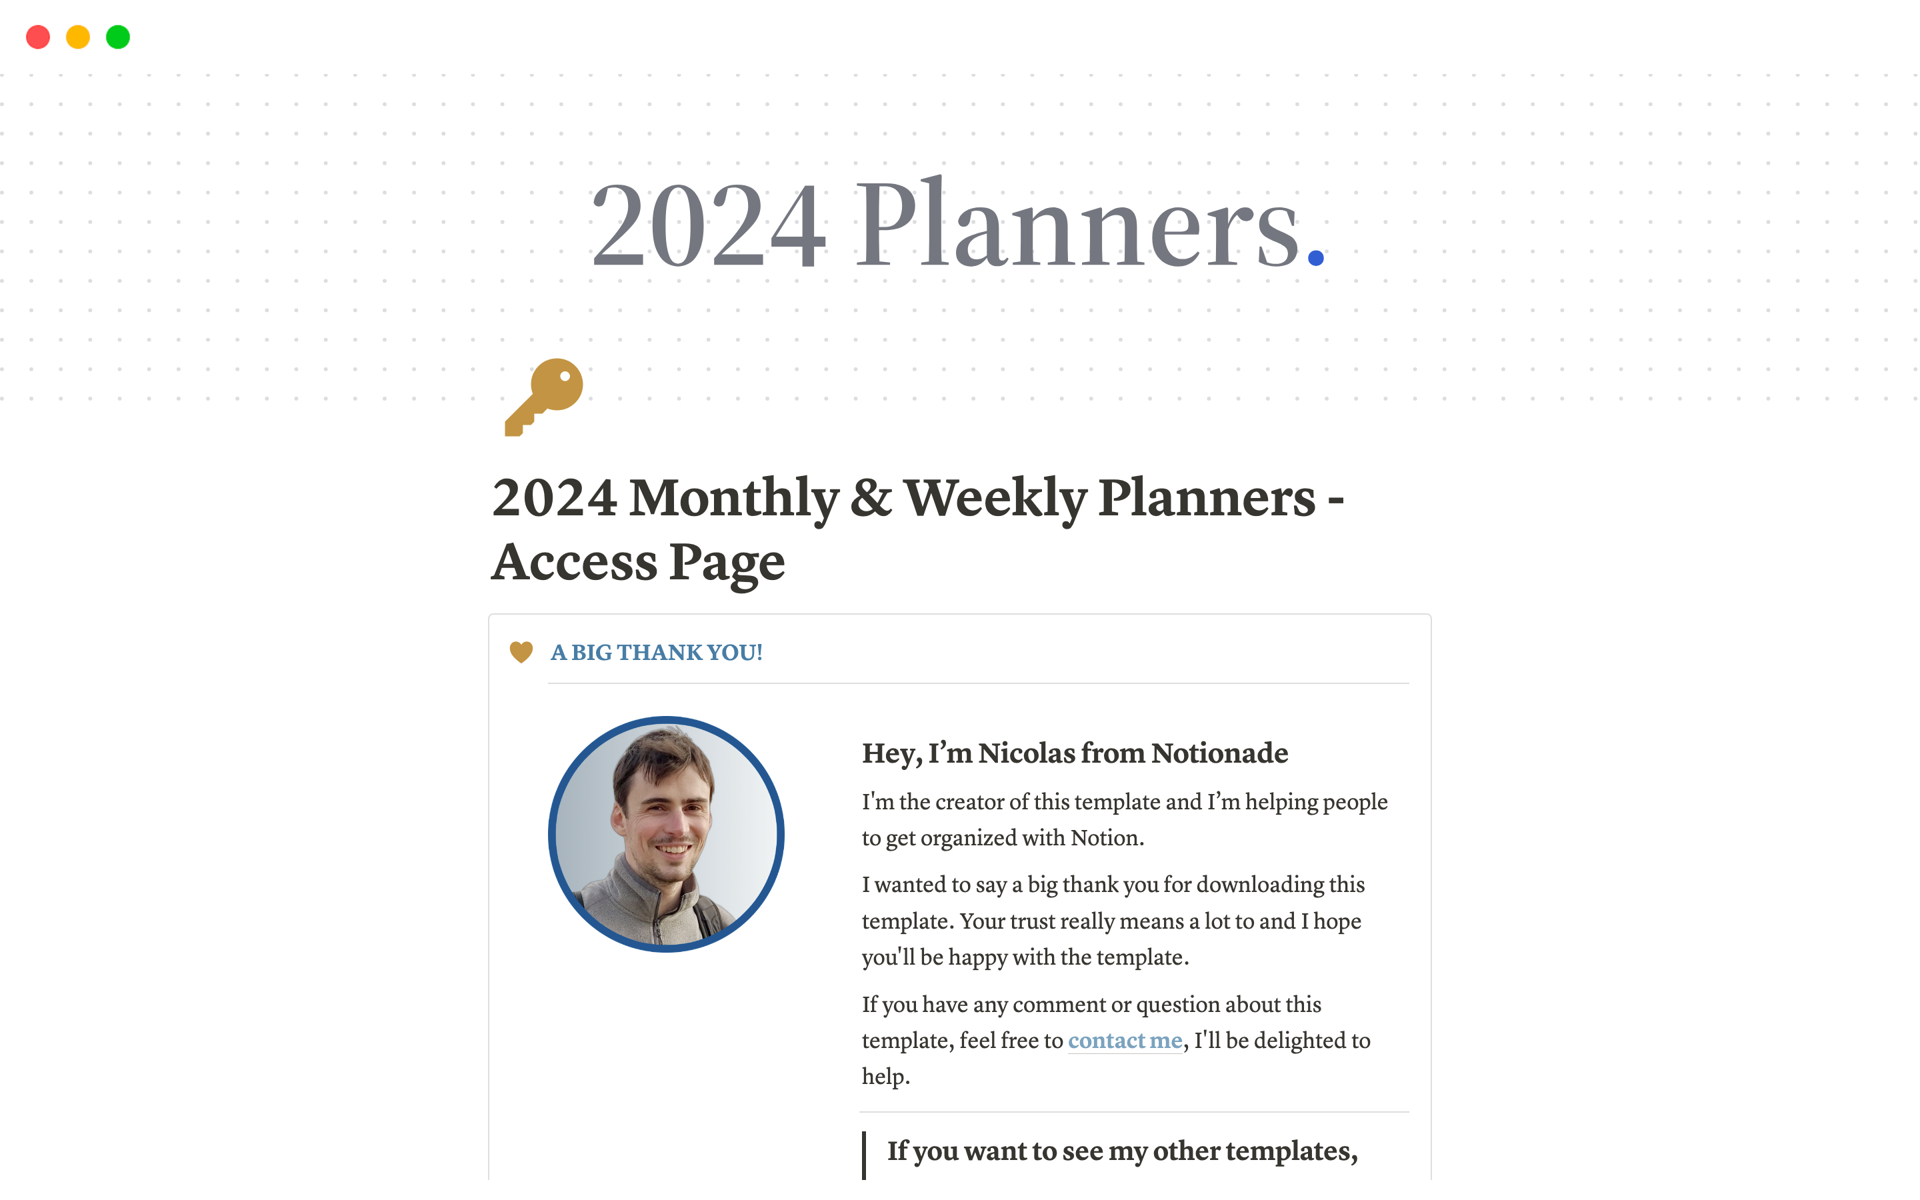 Vista previa de una plantilla para 2024 Monthly & Weekly Planners